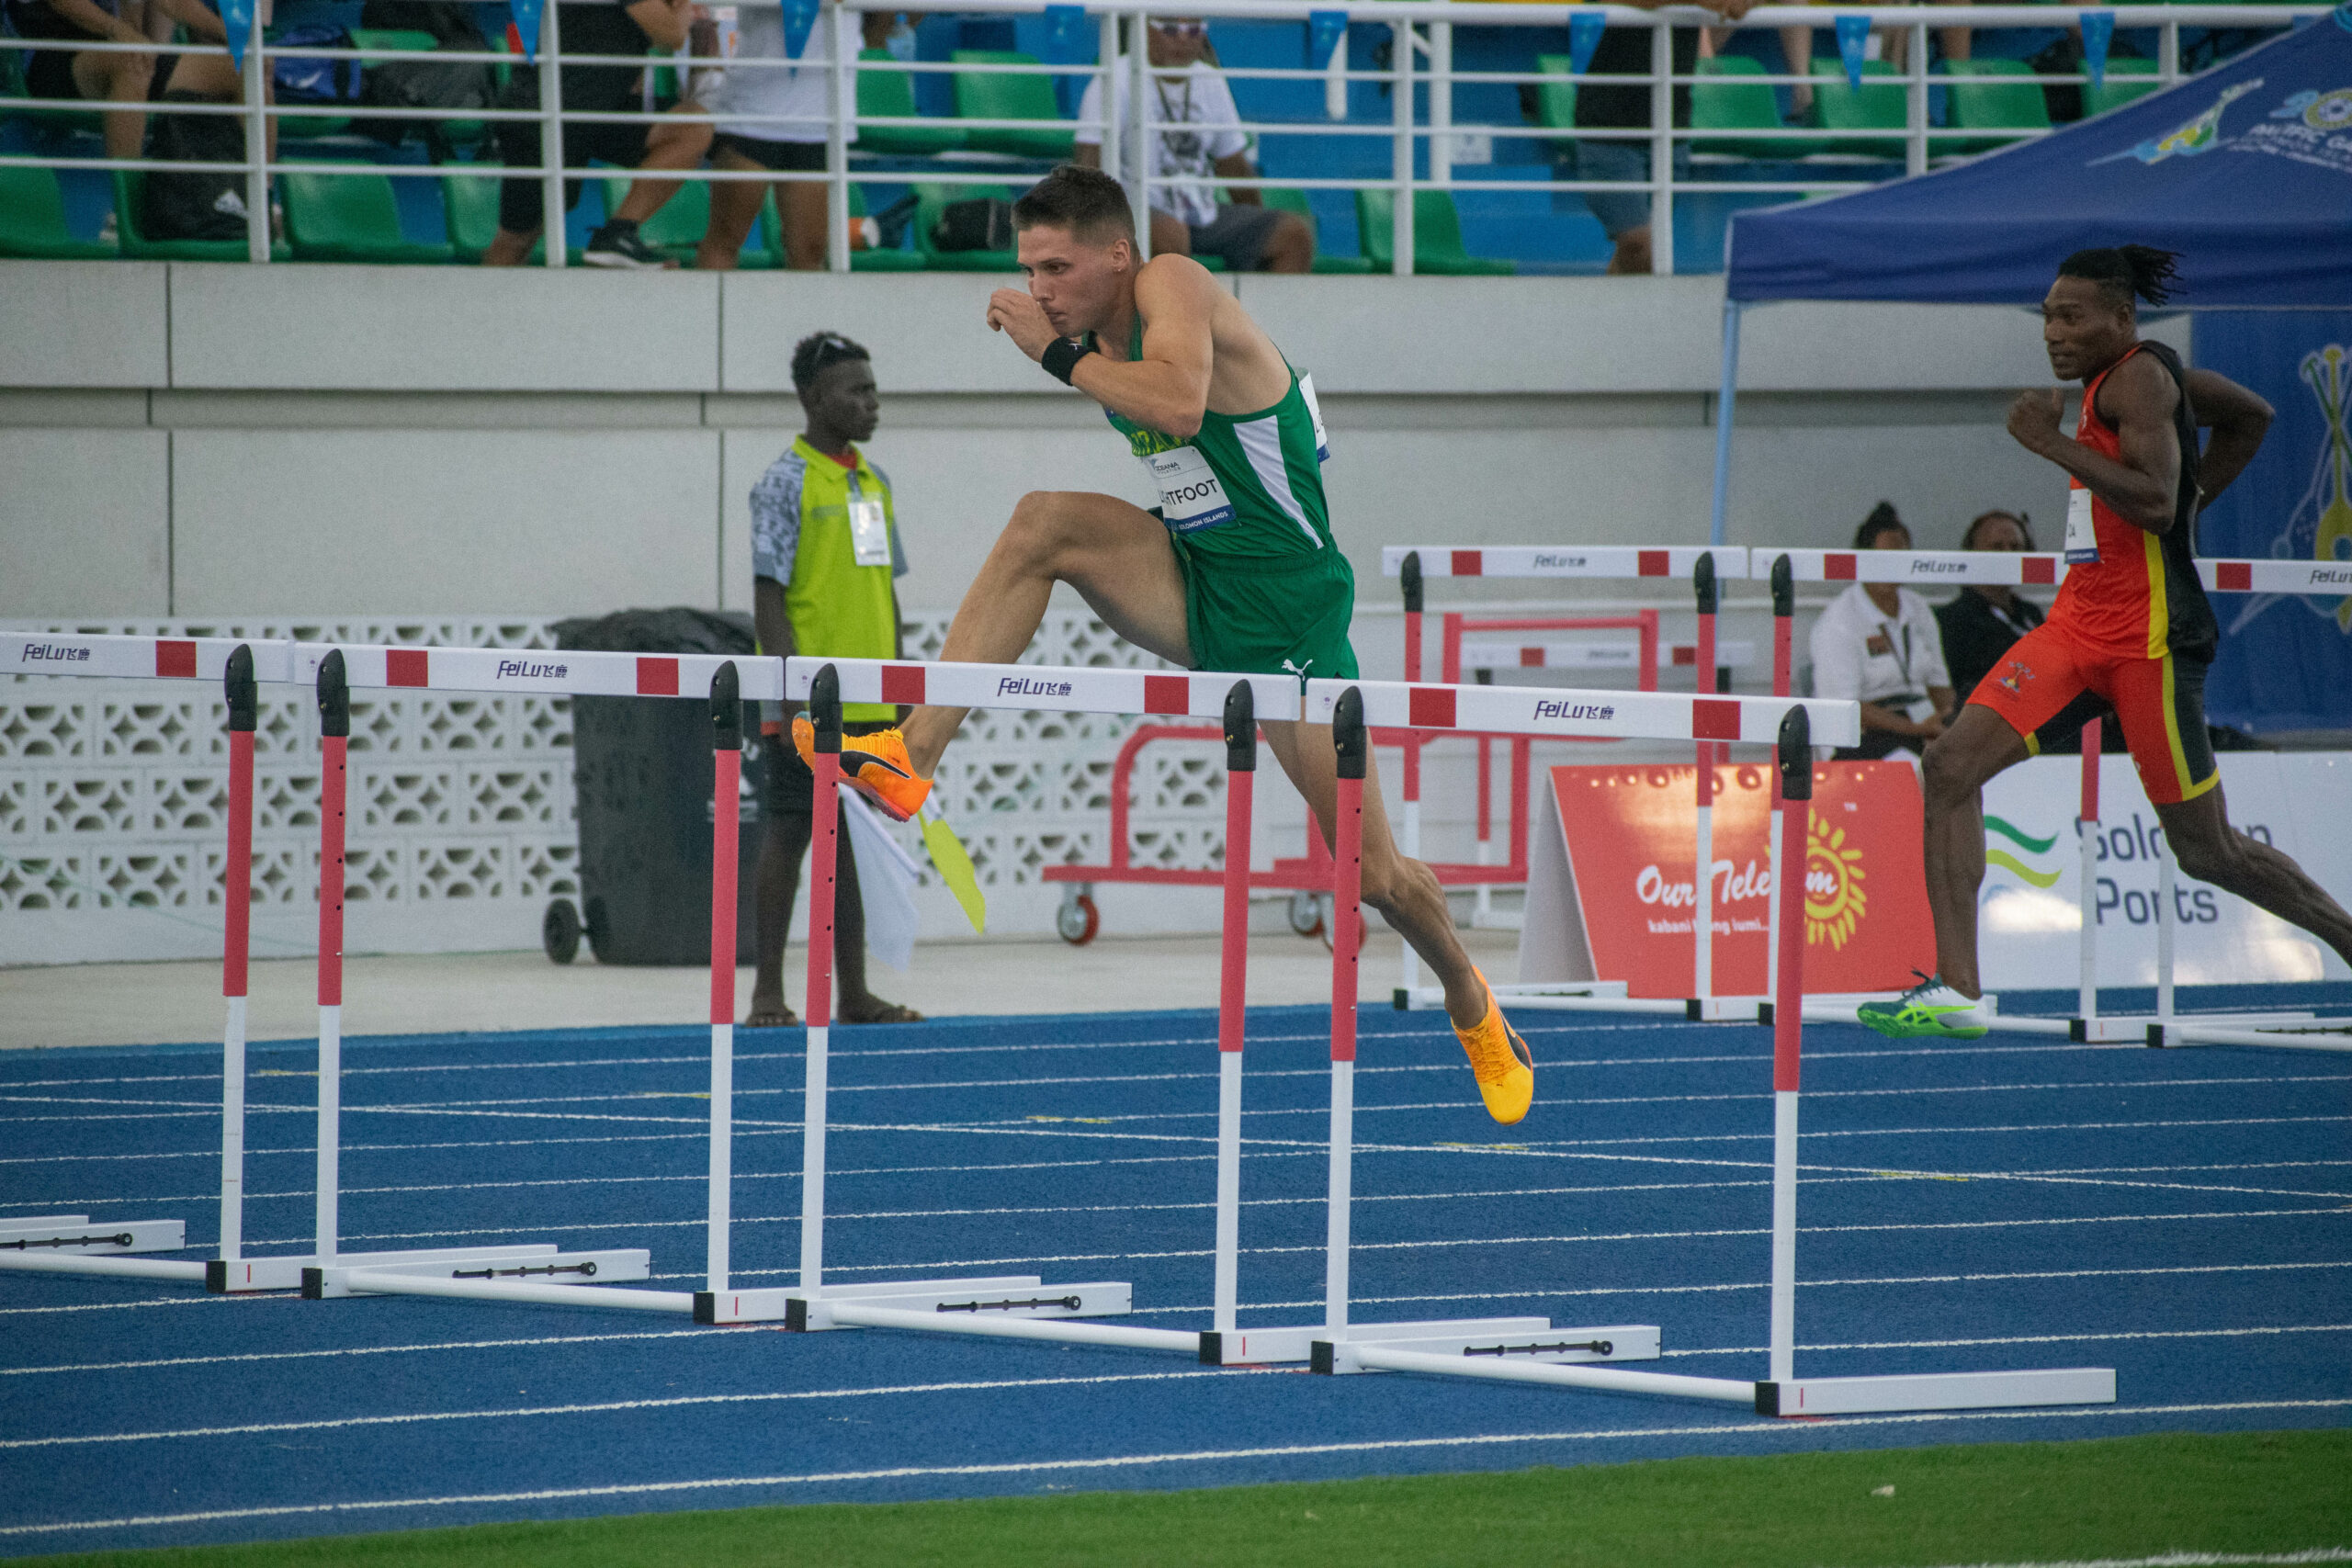 A man doing hurdles